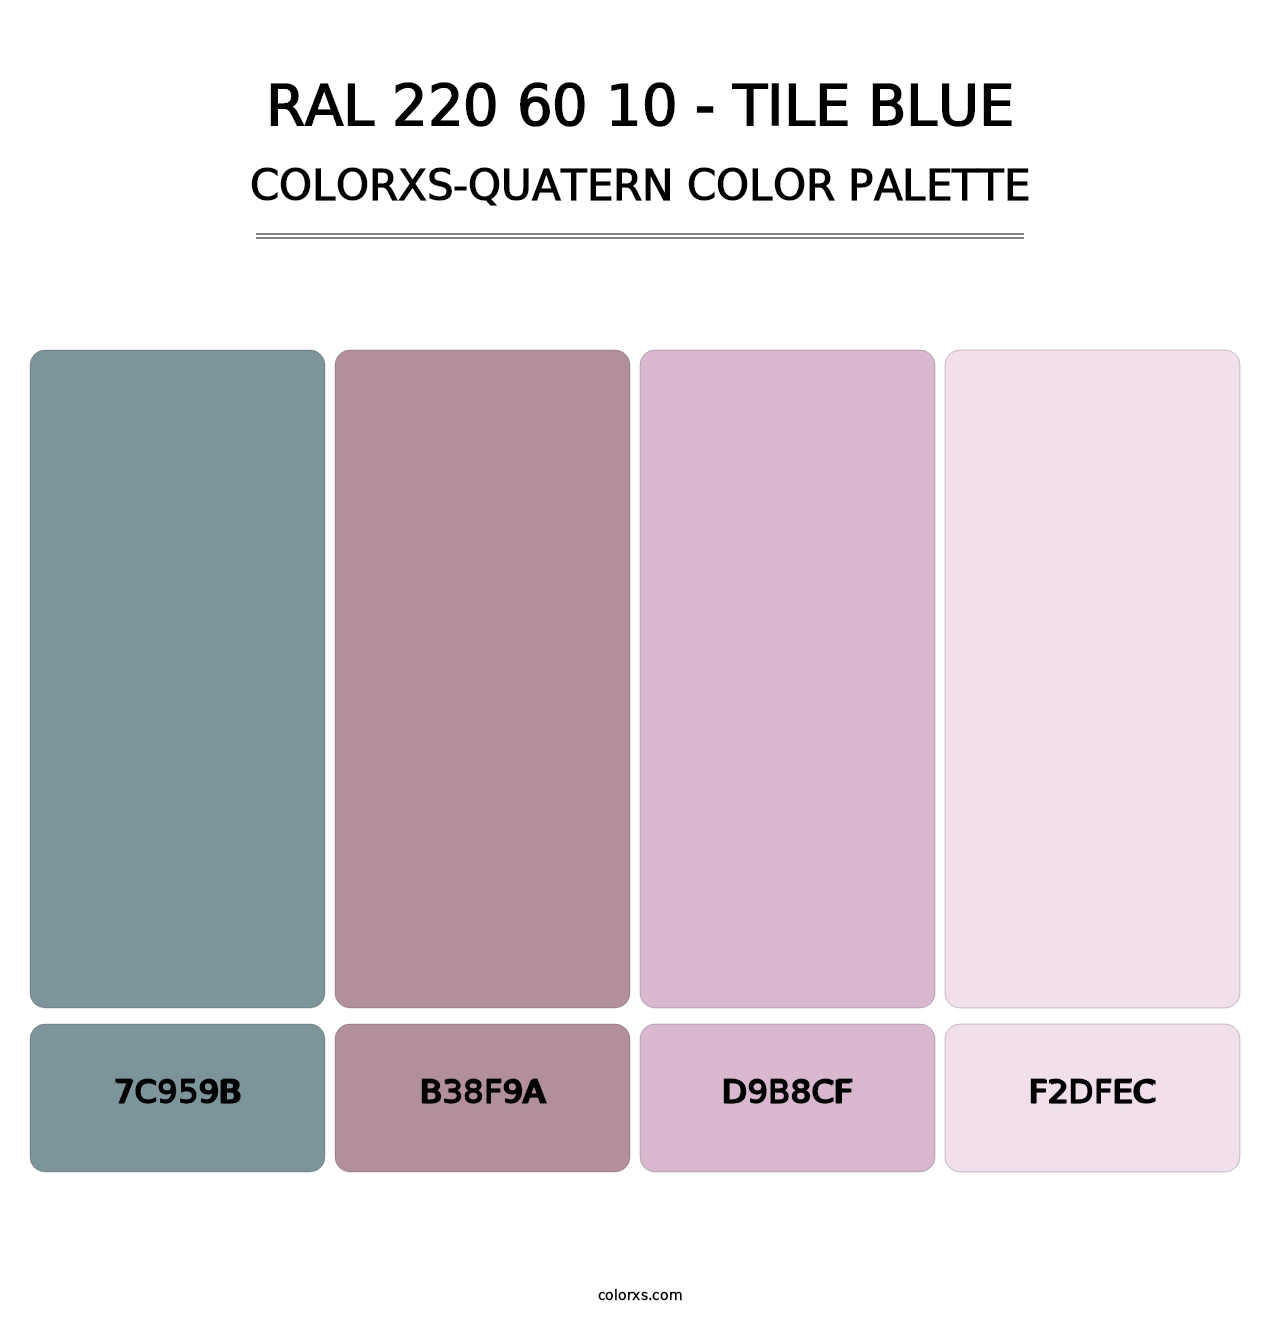 RAL 220 60 10 - Tile Blue - Colorxs Quatern Palette